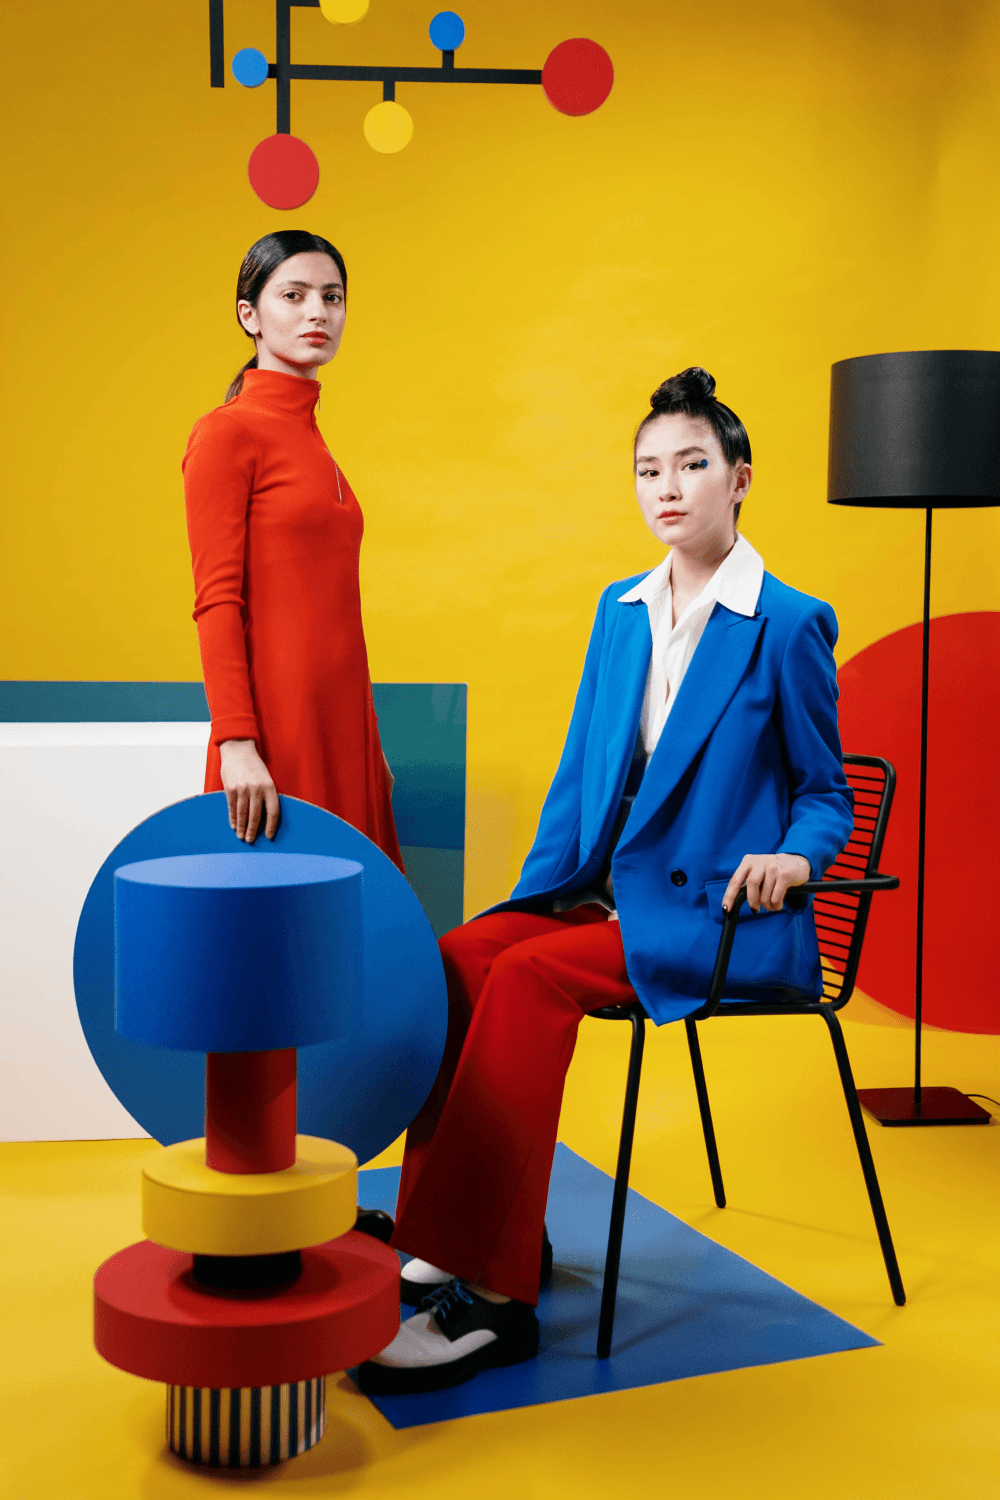 Twee personen die in de camera kijken. Een zit op een stoel de ander staat. Er zijn verschillende abstracte vormen te zien in de primaire kleuren blauw, geel en rood.